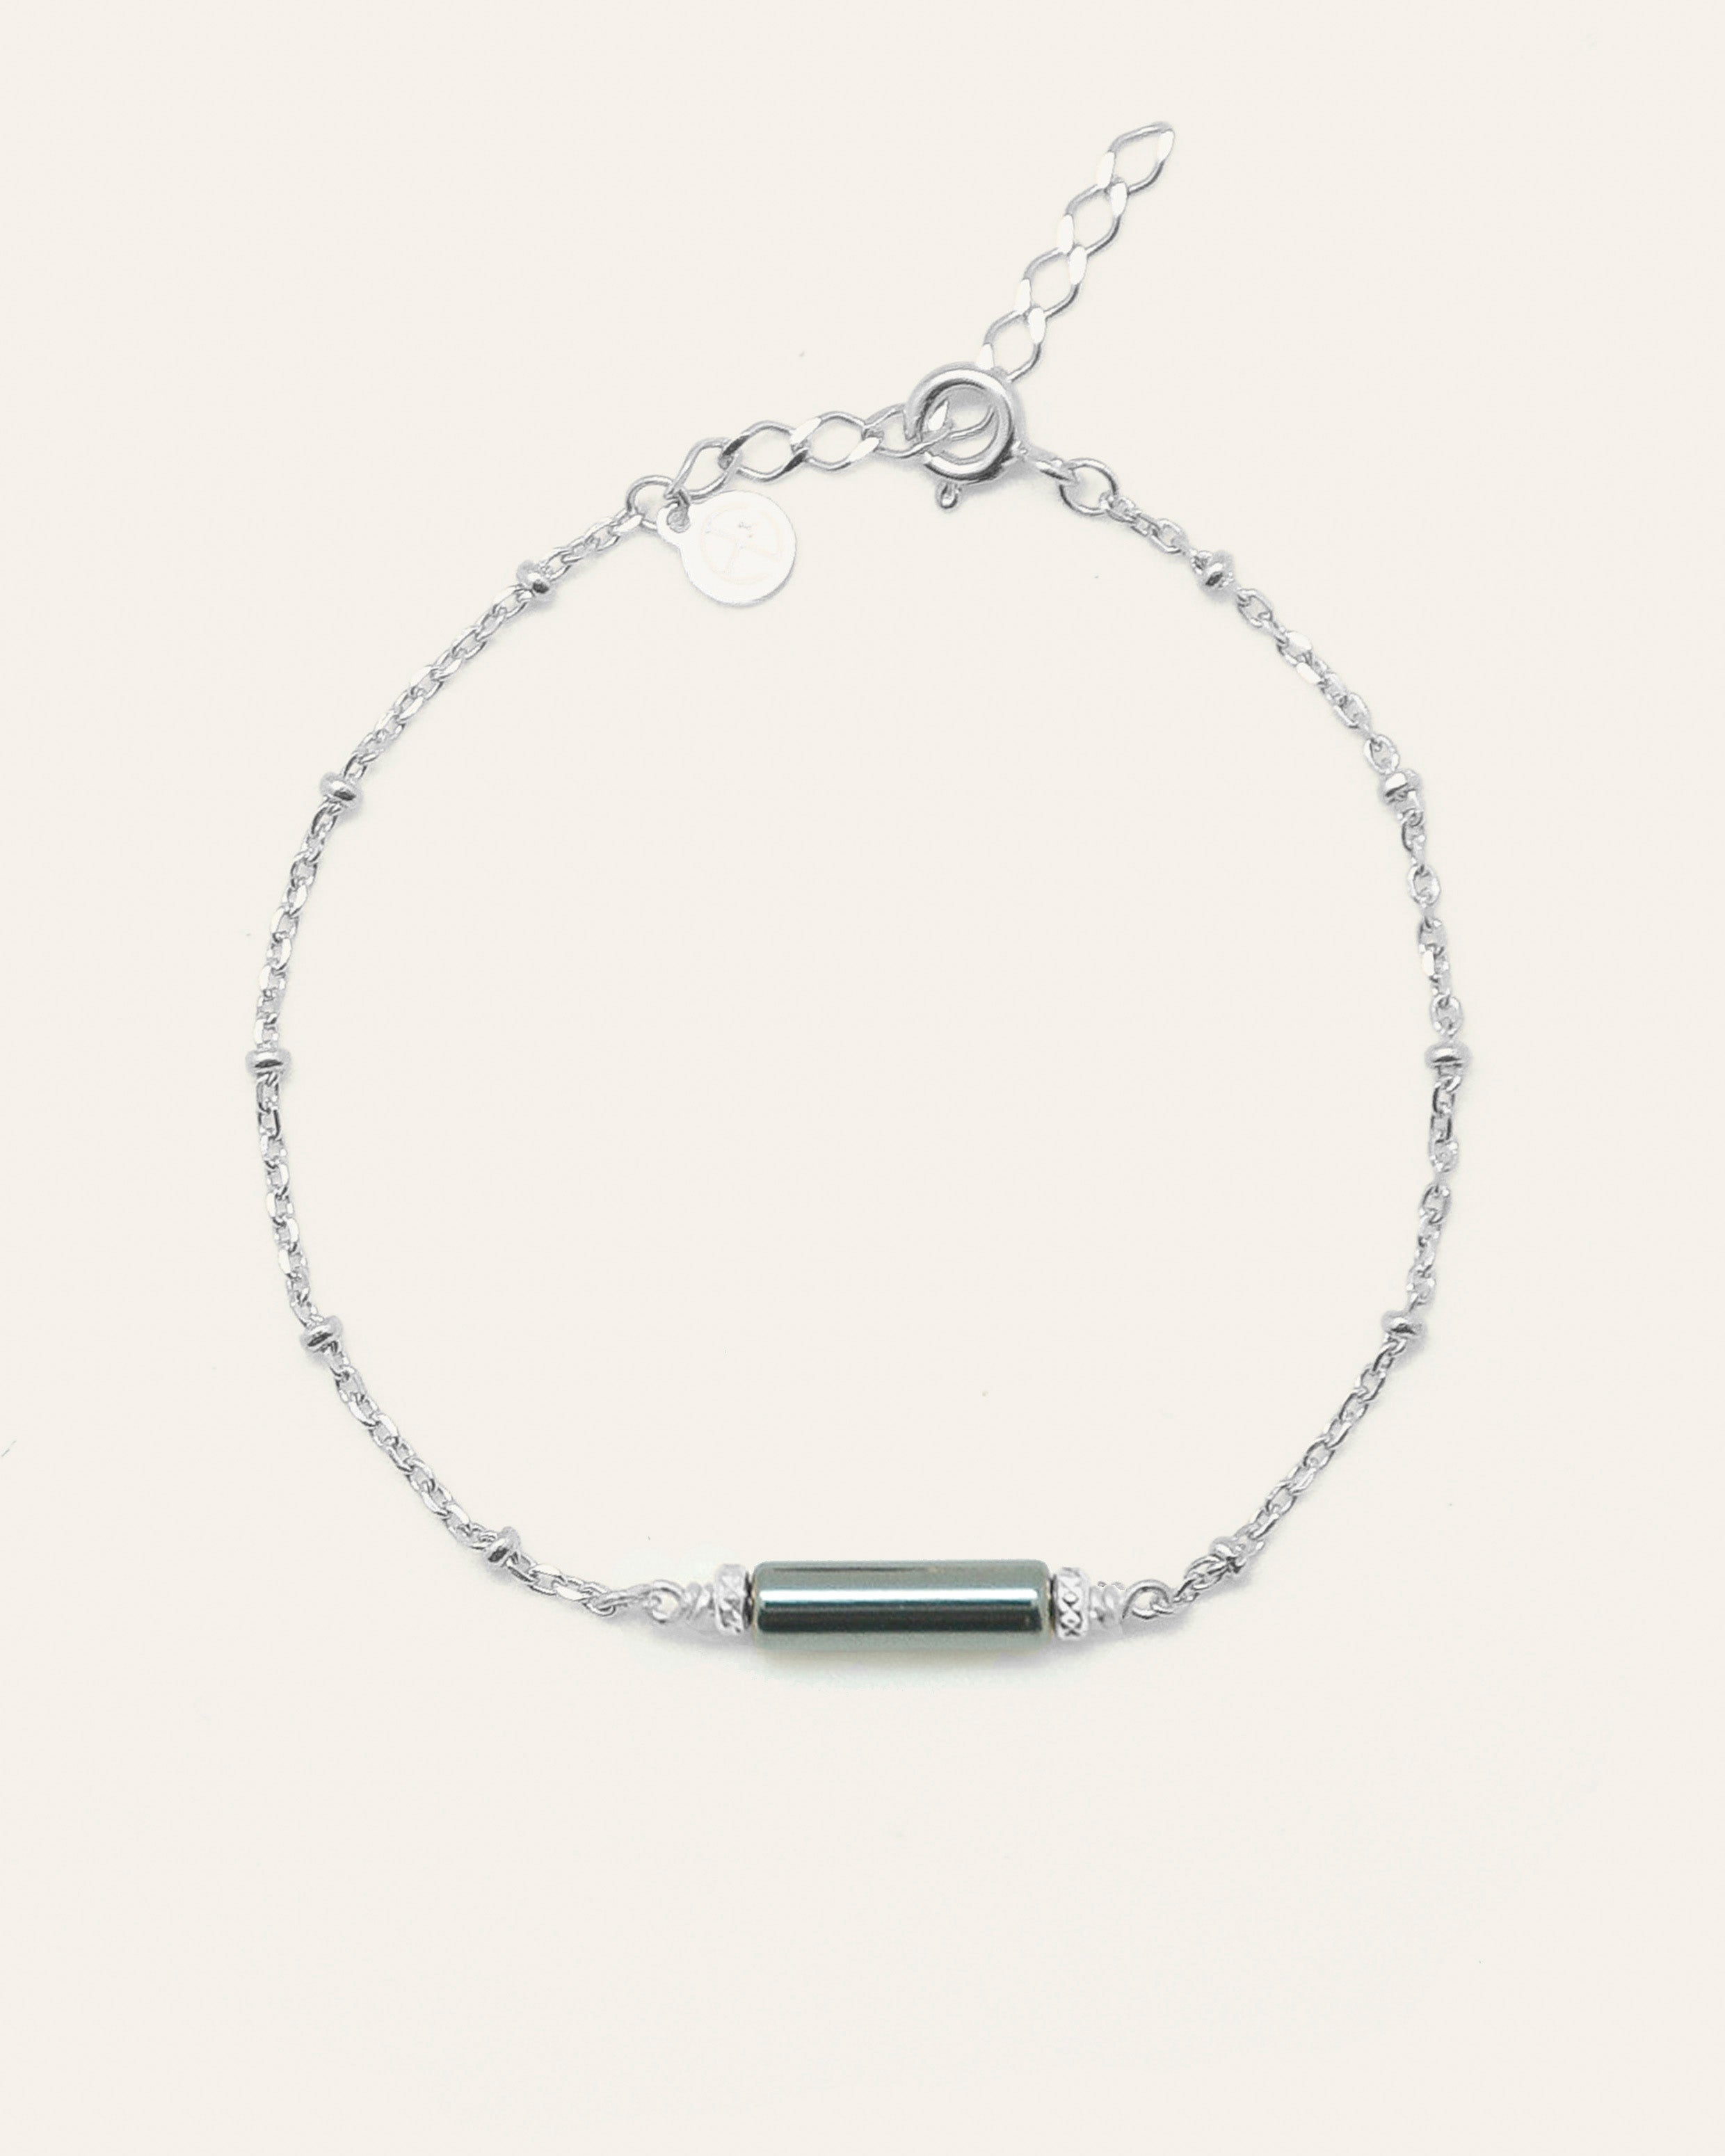 Bracelet en argent massif 925 composé d'une chaîne boule, et d'une pierre d'Hématite rectangle made in France.